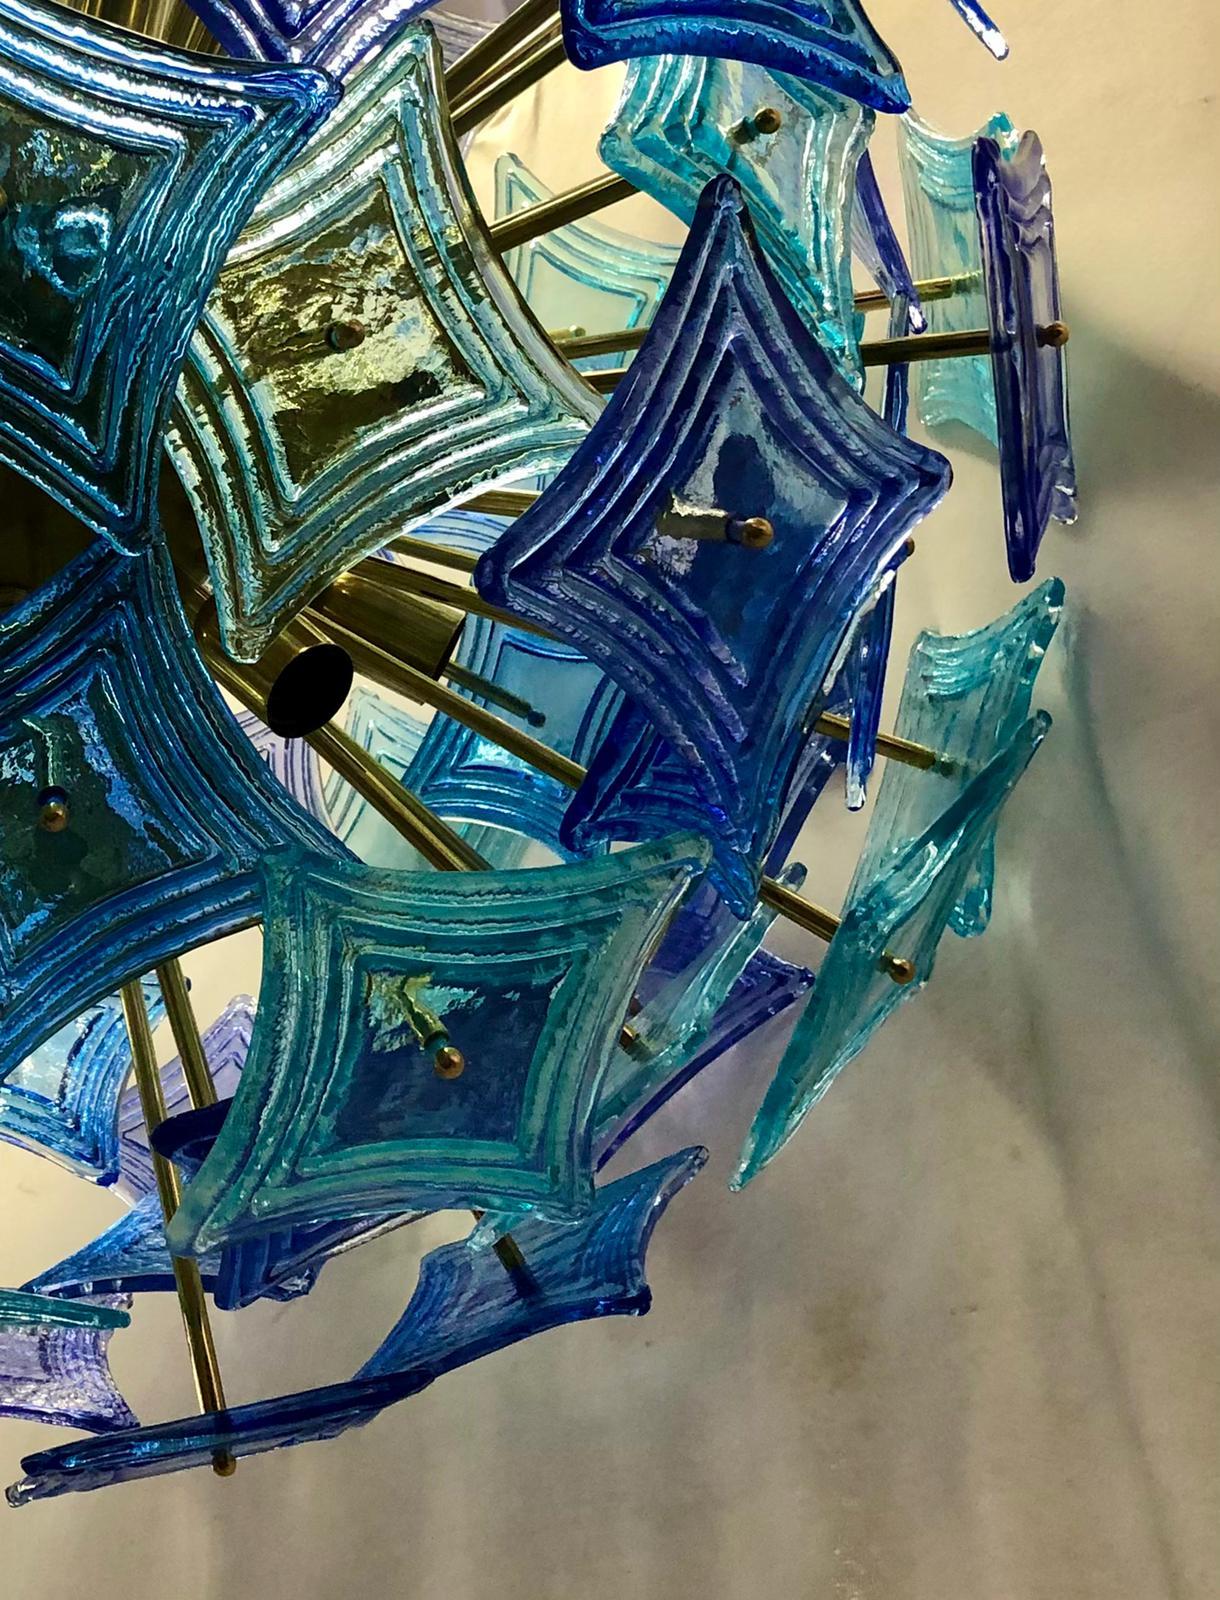 De grands et particuliers mouchoirs en verre, comme s'ils étaient des losanges, composent ce beau lustre de Murano, plus avec deux couleurs vives et originales : le vert clair et le bleu.

Constitué d'une grande sphère centrale dans laquelle sont